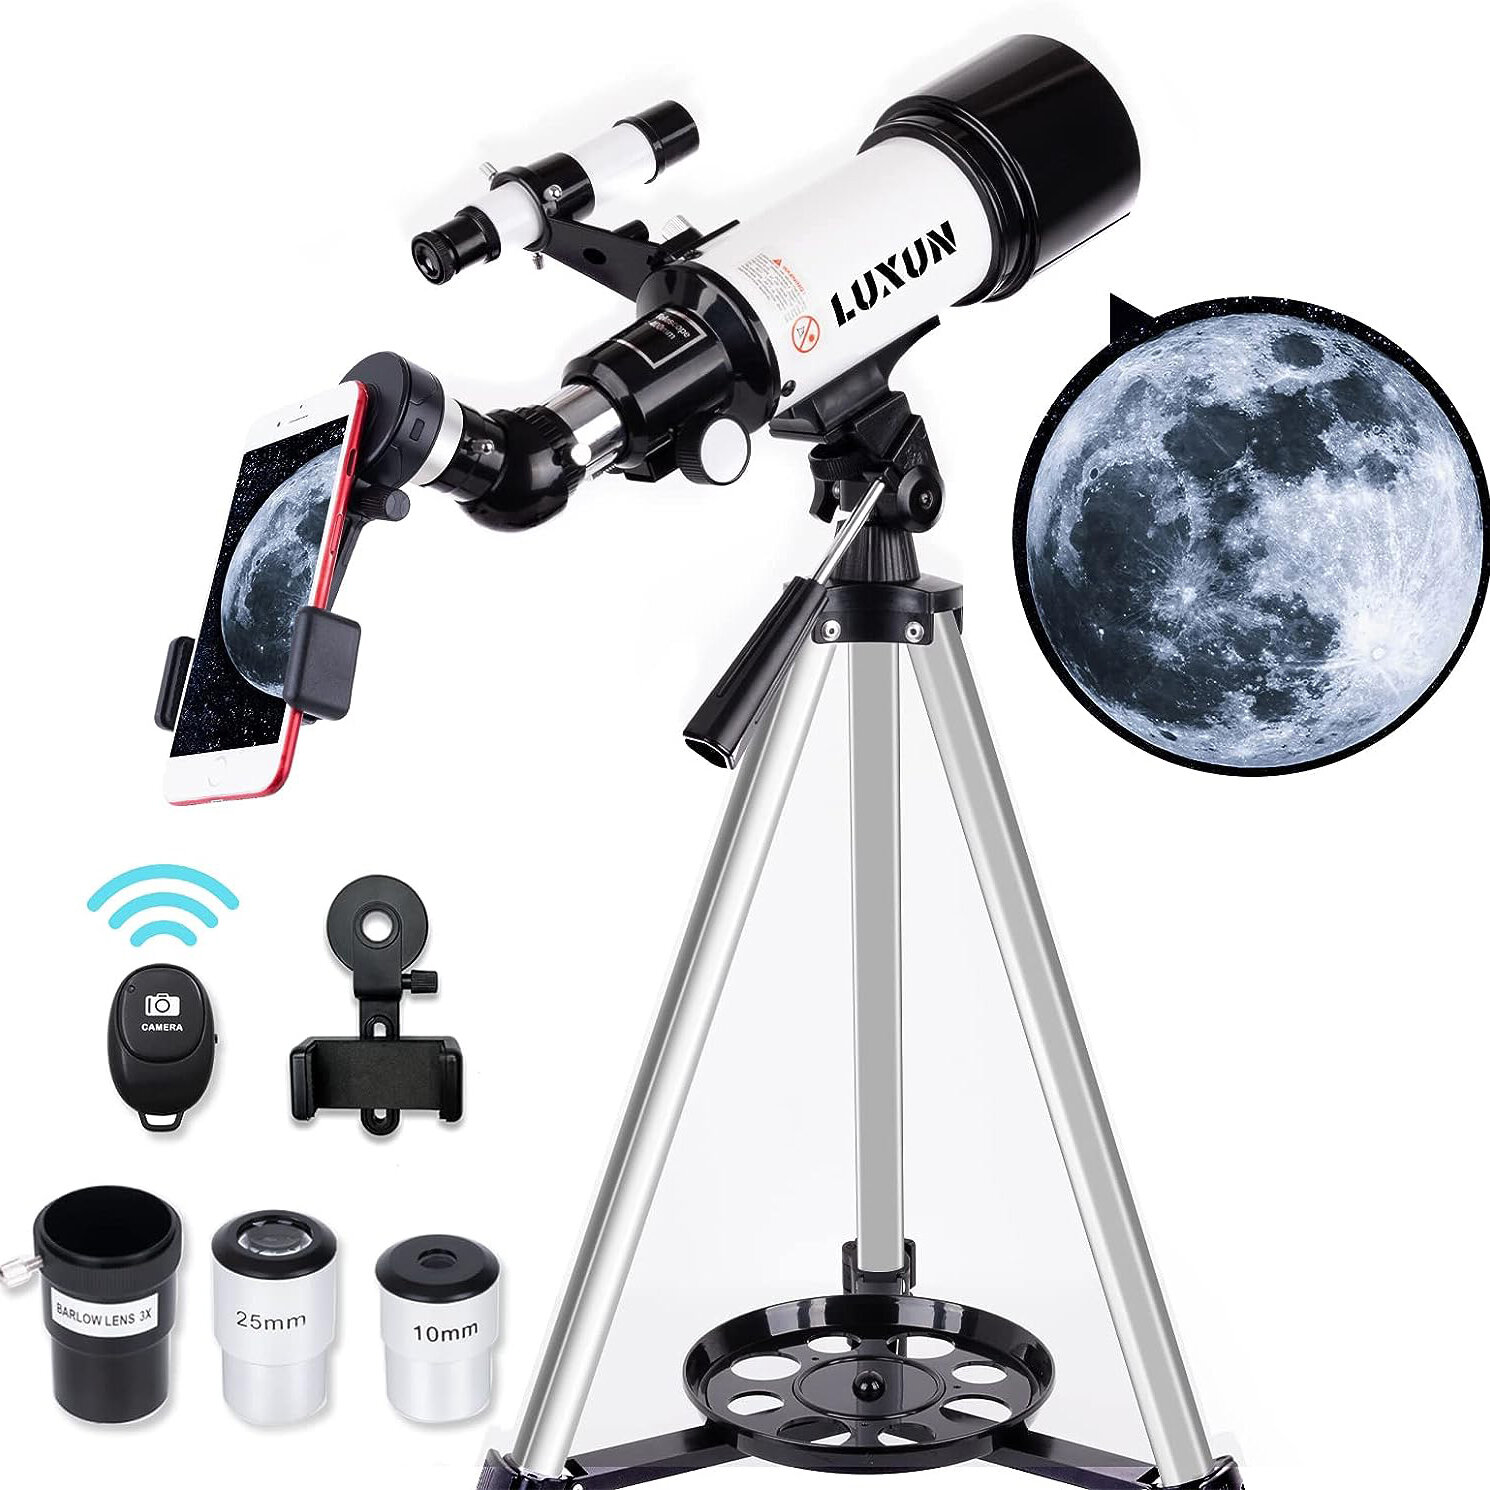 Télescope LUXUN pour débutants, enfants et adultes, ouverture de 70 mm, télescope réfracteur astronomique portable de 400 mm - Télescope de voyage avec adaptateur téléphone sans fil Bluetooth